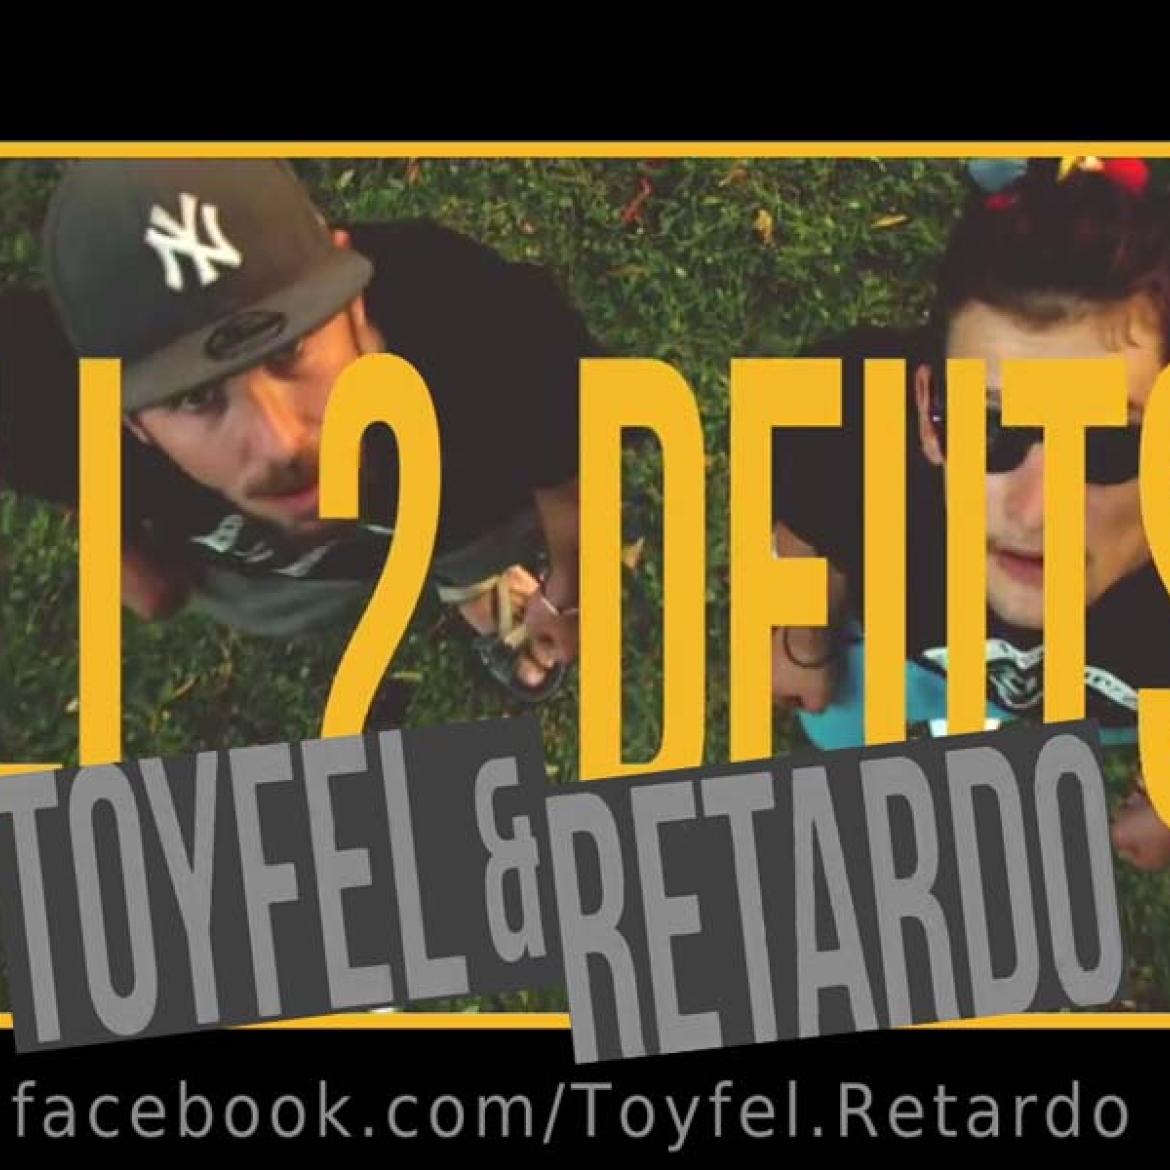 facebook.com/Toyfel.Retardo